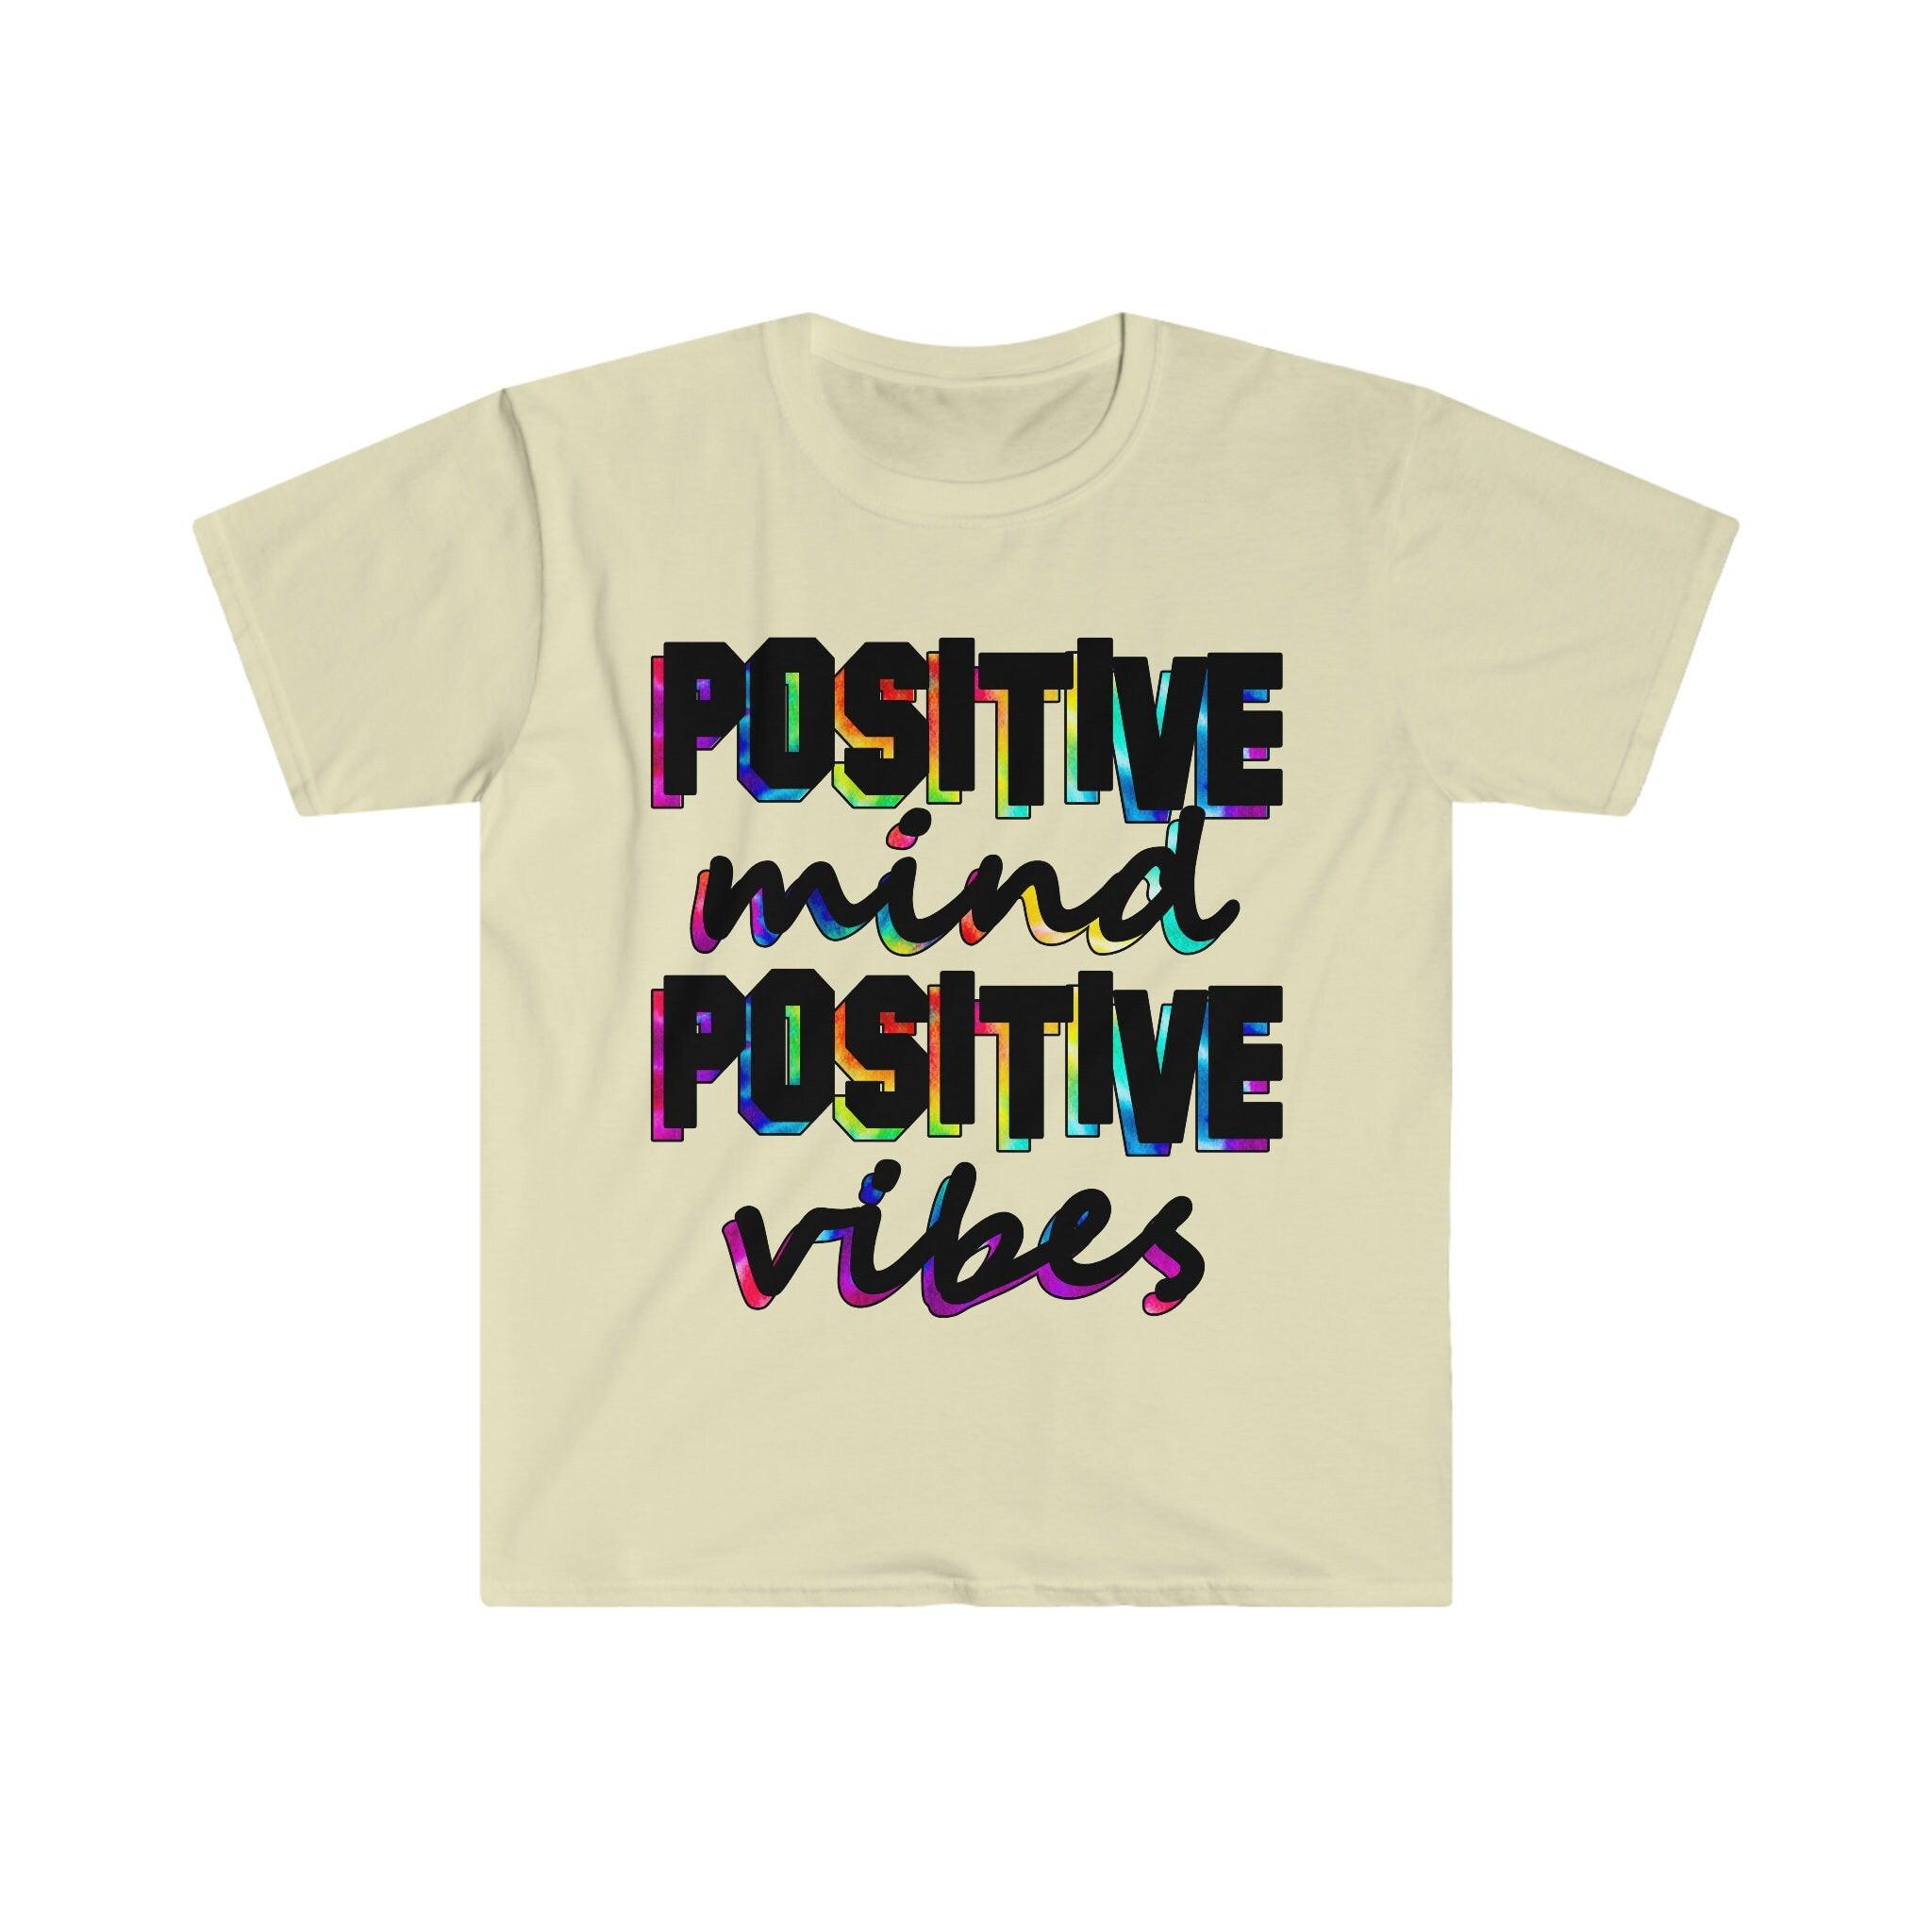 تي شيرت Positive Mind Positive Vibes، قميص تحفيزي، قميص ملهم، تي شيرت إيجابي - plusminusco.com